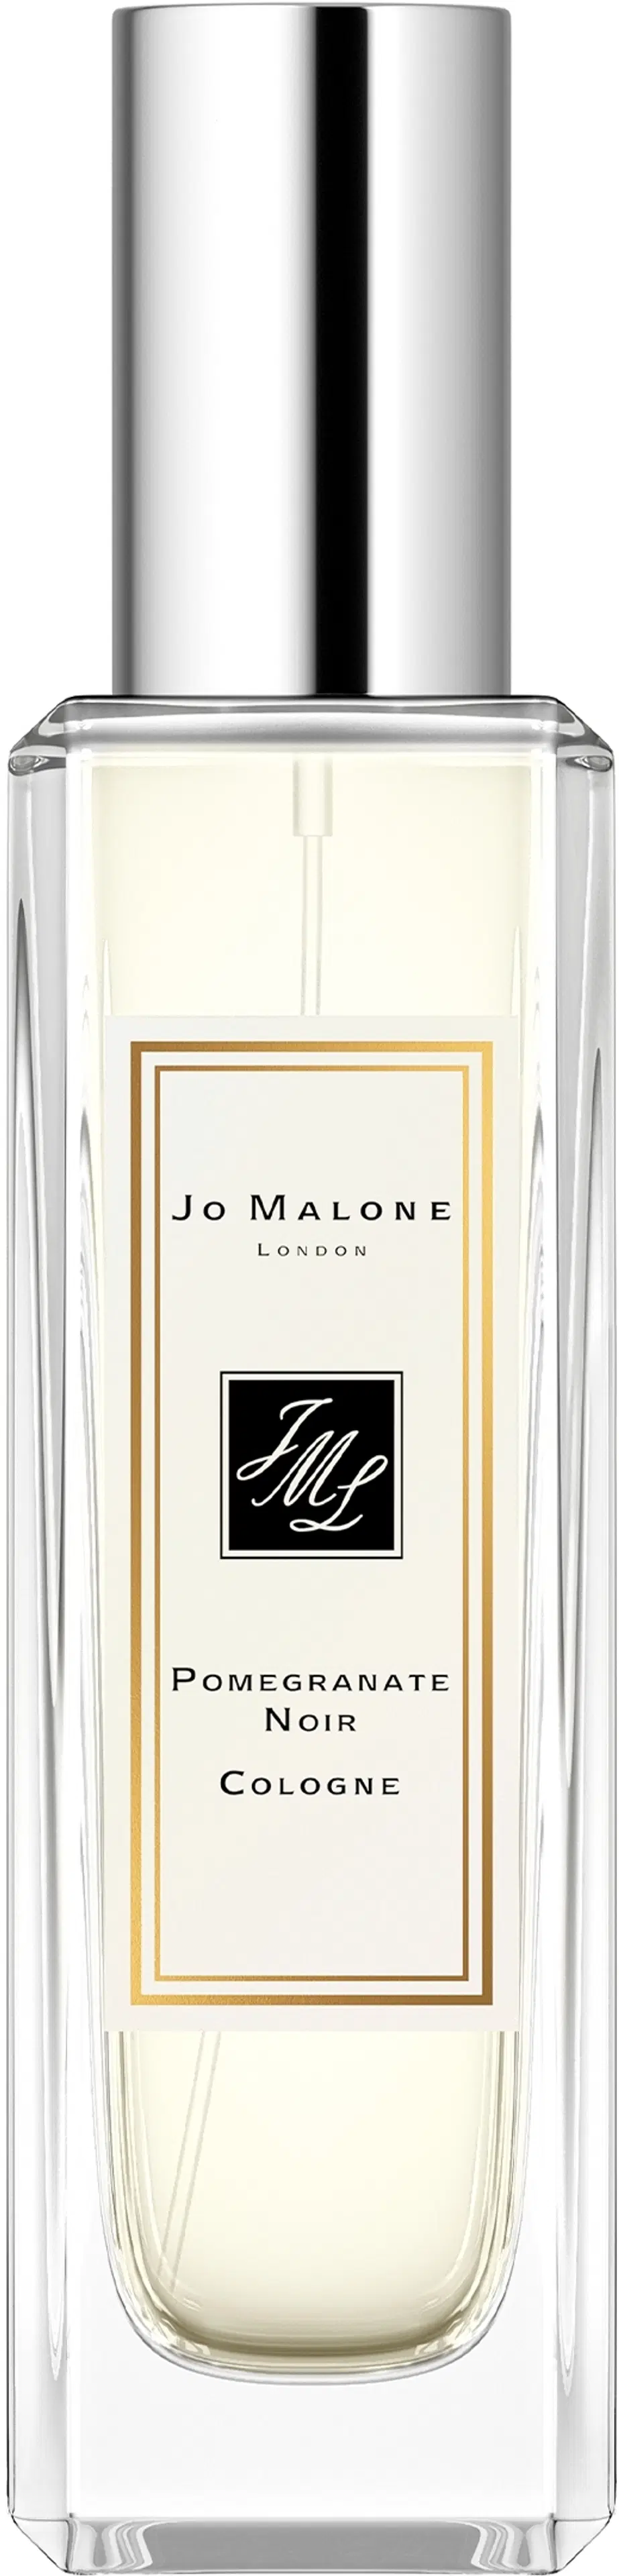 Jo Malone London Pomegranate Noir Cologne EdT tuoksu 30 ml